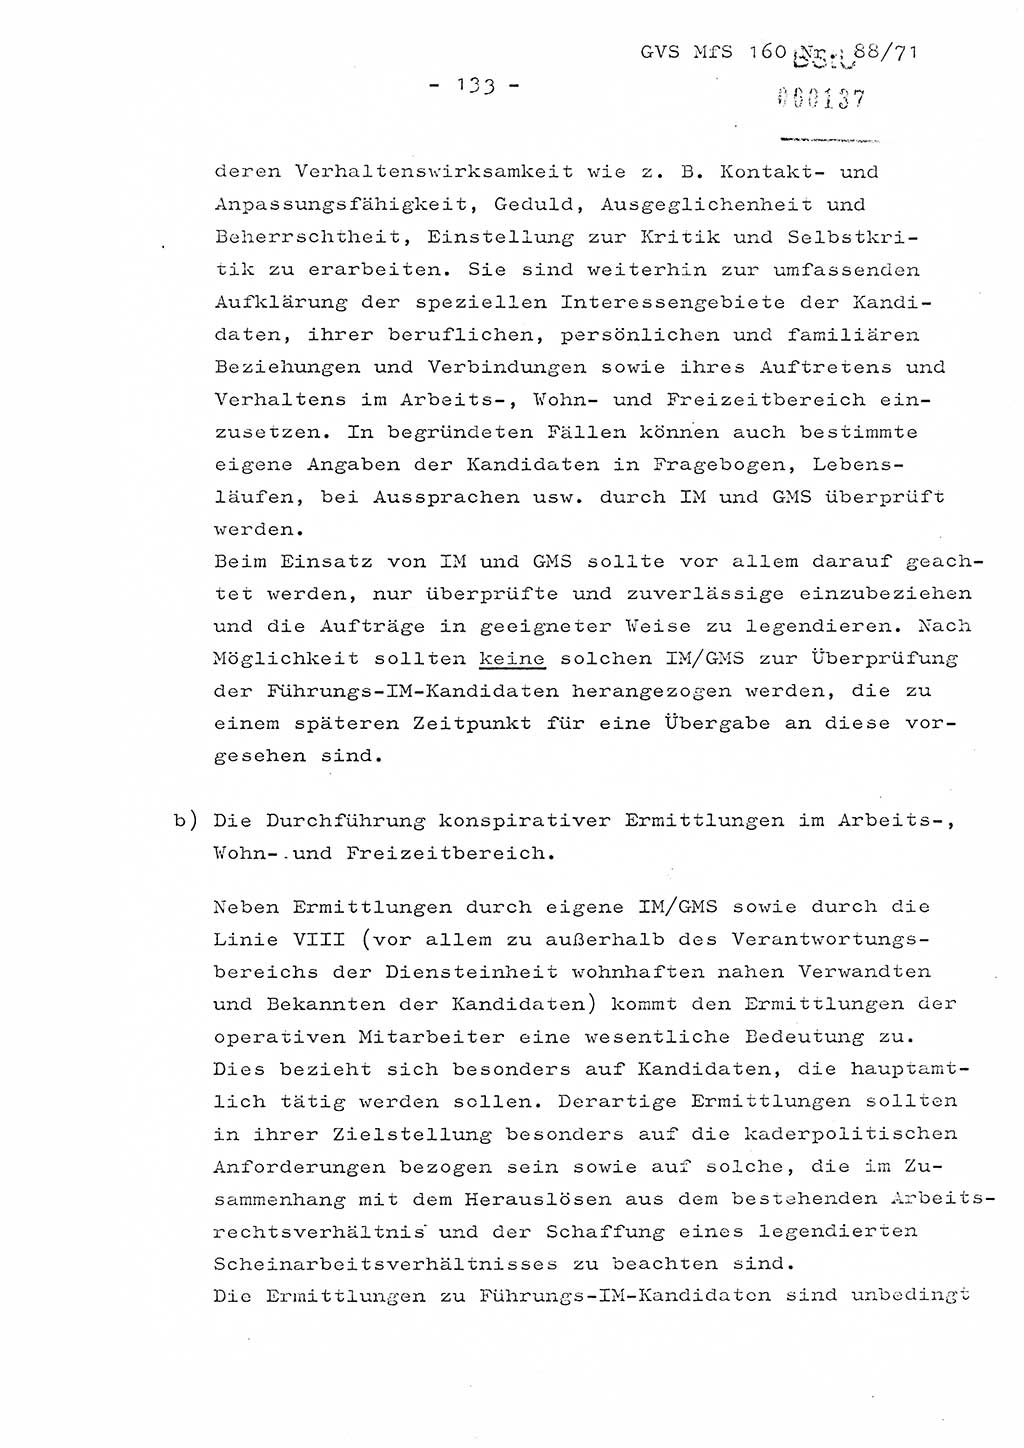 Dissertation Oberstleutnant Josef Schwarz (BV Schwerin), Major Fritz Amm (JHS), Hauptmann Peter Gräßler (JHS), Ministerium für Staatssicherheit (MfS) [Deutsche Demokratische Republik (DDR)], Juristische Hochschule (JHS), Geheime Verschlußsache (GVS) 160-88/71, Potsdam 1972, Seite 133 (Diss. MfS DDR JHS GVS 160-88/71 1972, S. 133)